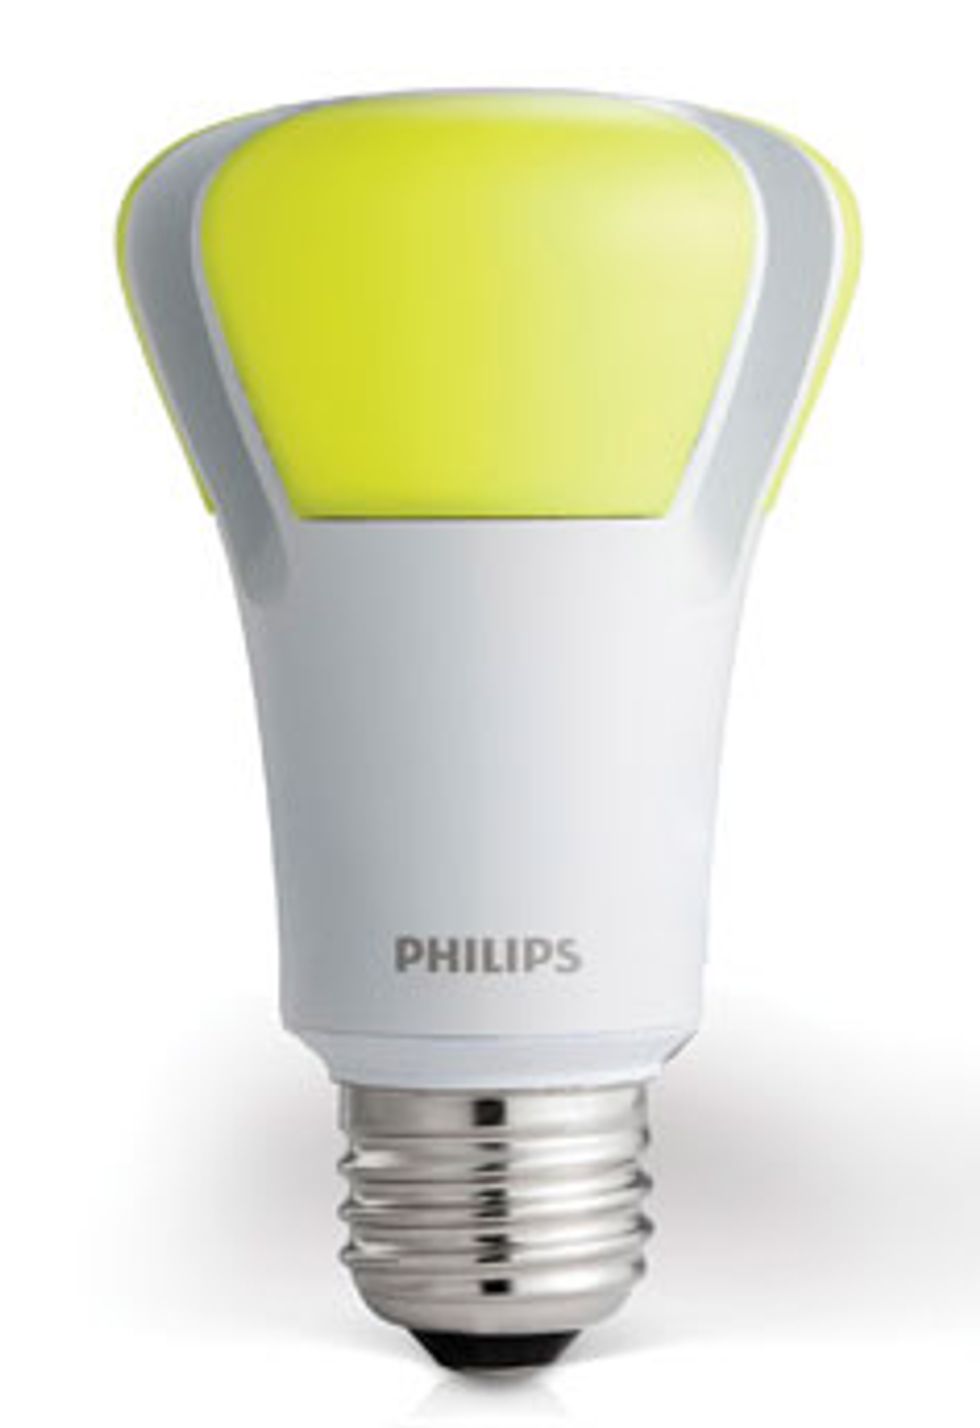 The Philips L Prize\u2013winning LED bulb